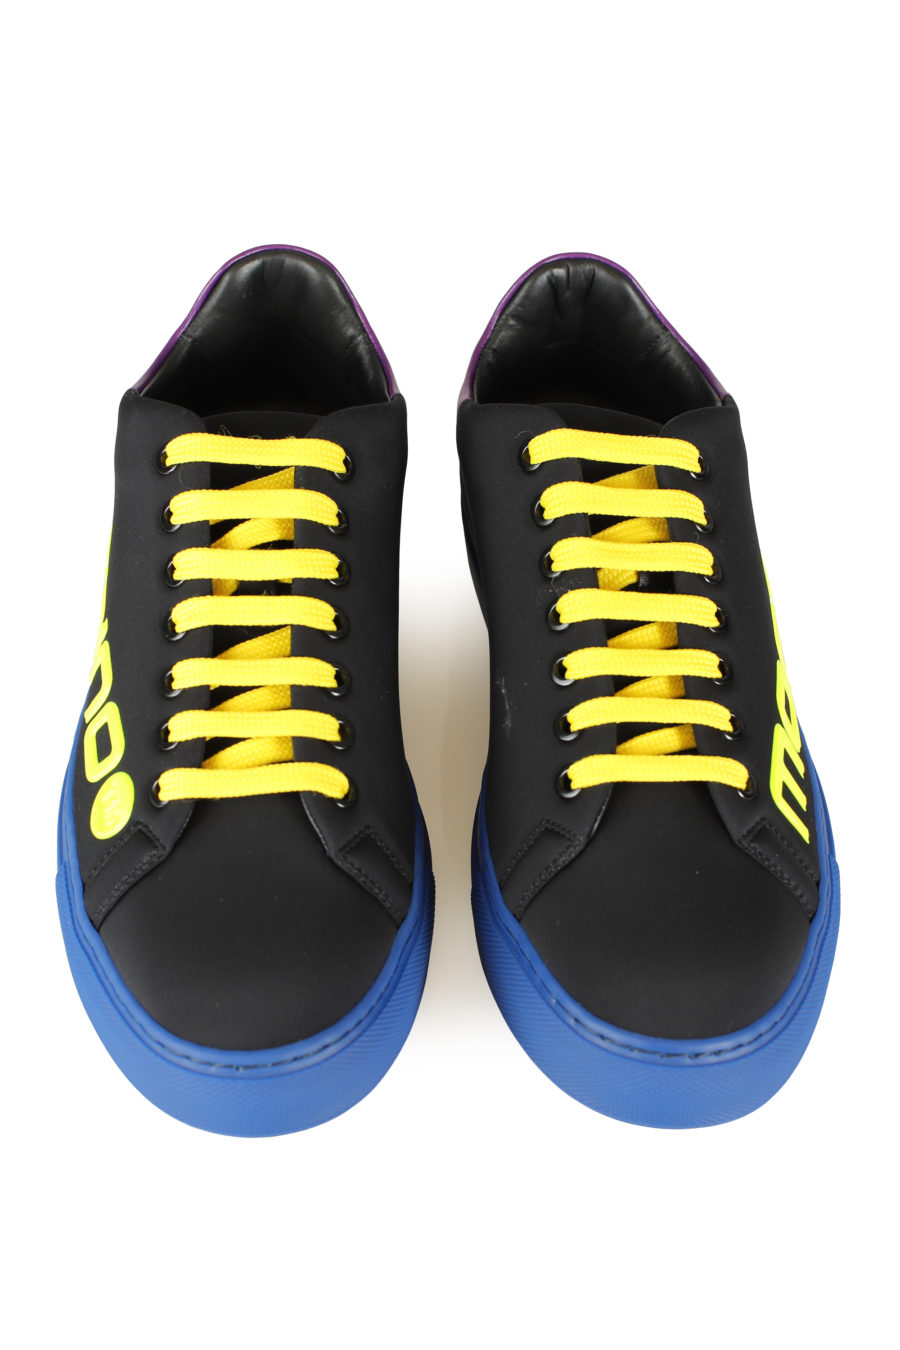 Zapatillas negras con detalles de colores - IMG 3453